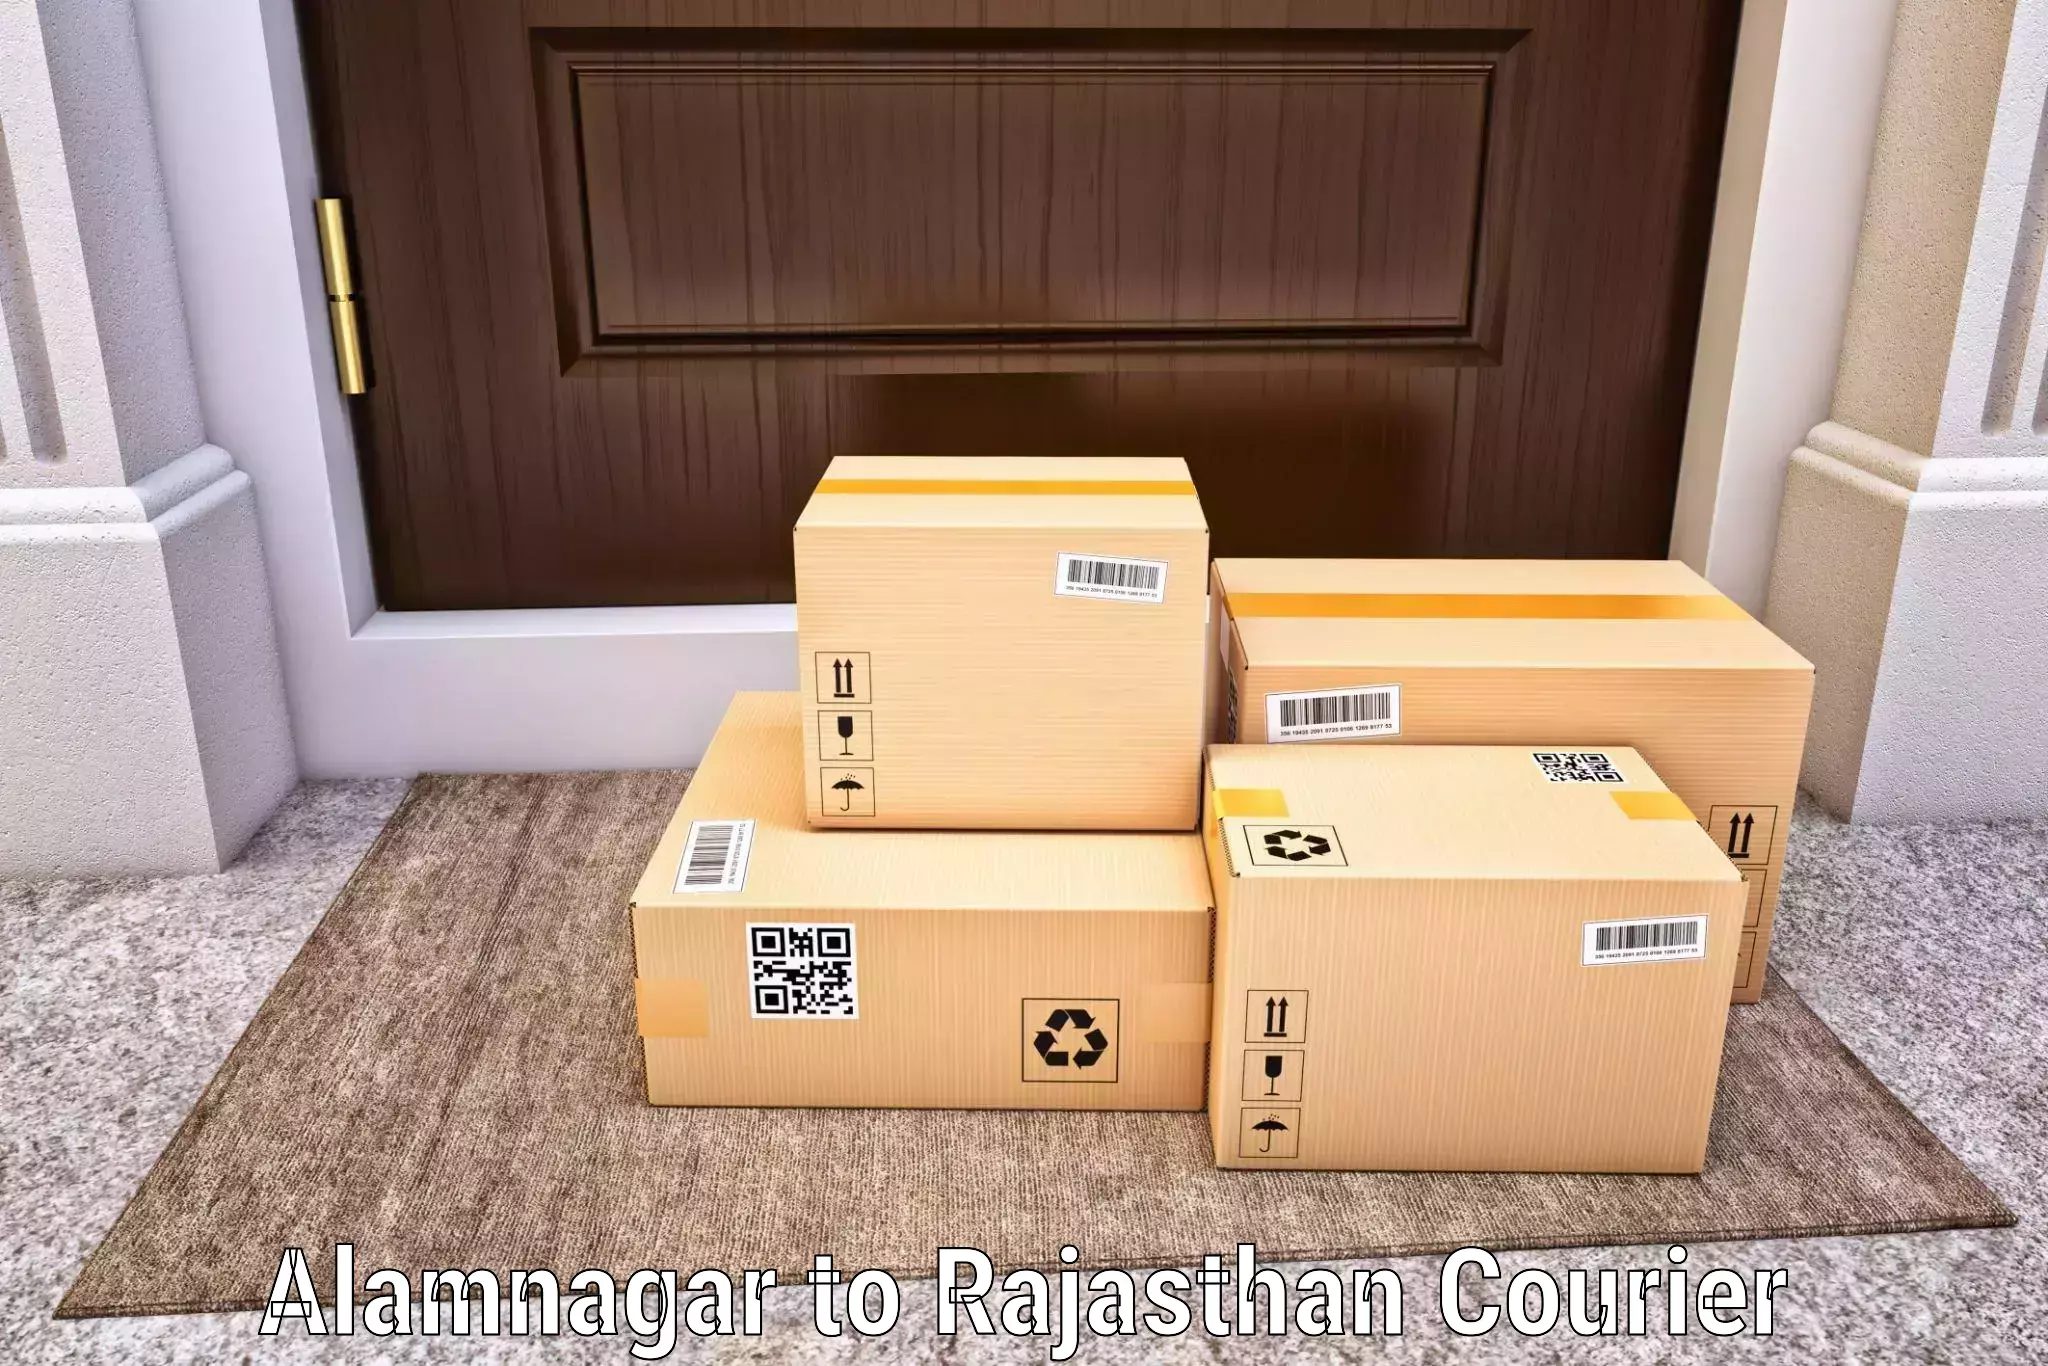 24-hour courier services Alamnagar to Malsisar